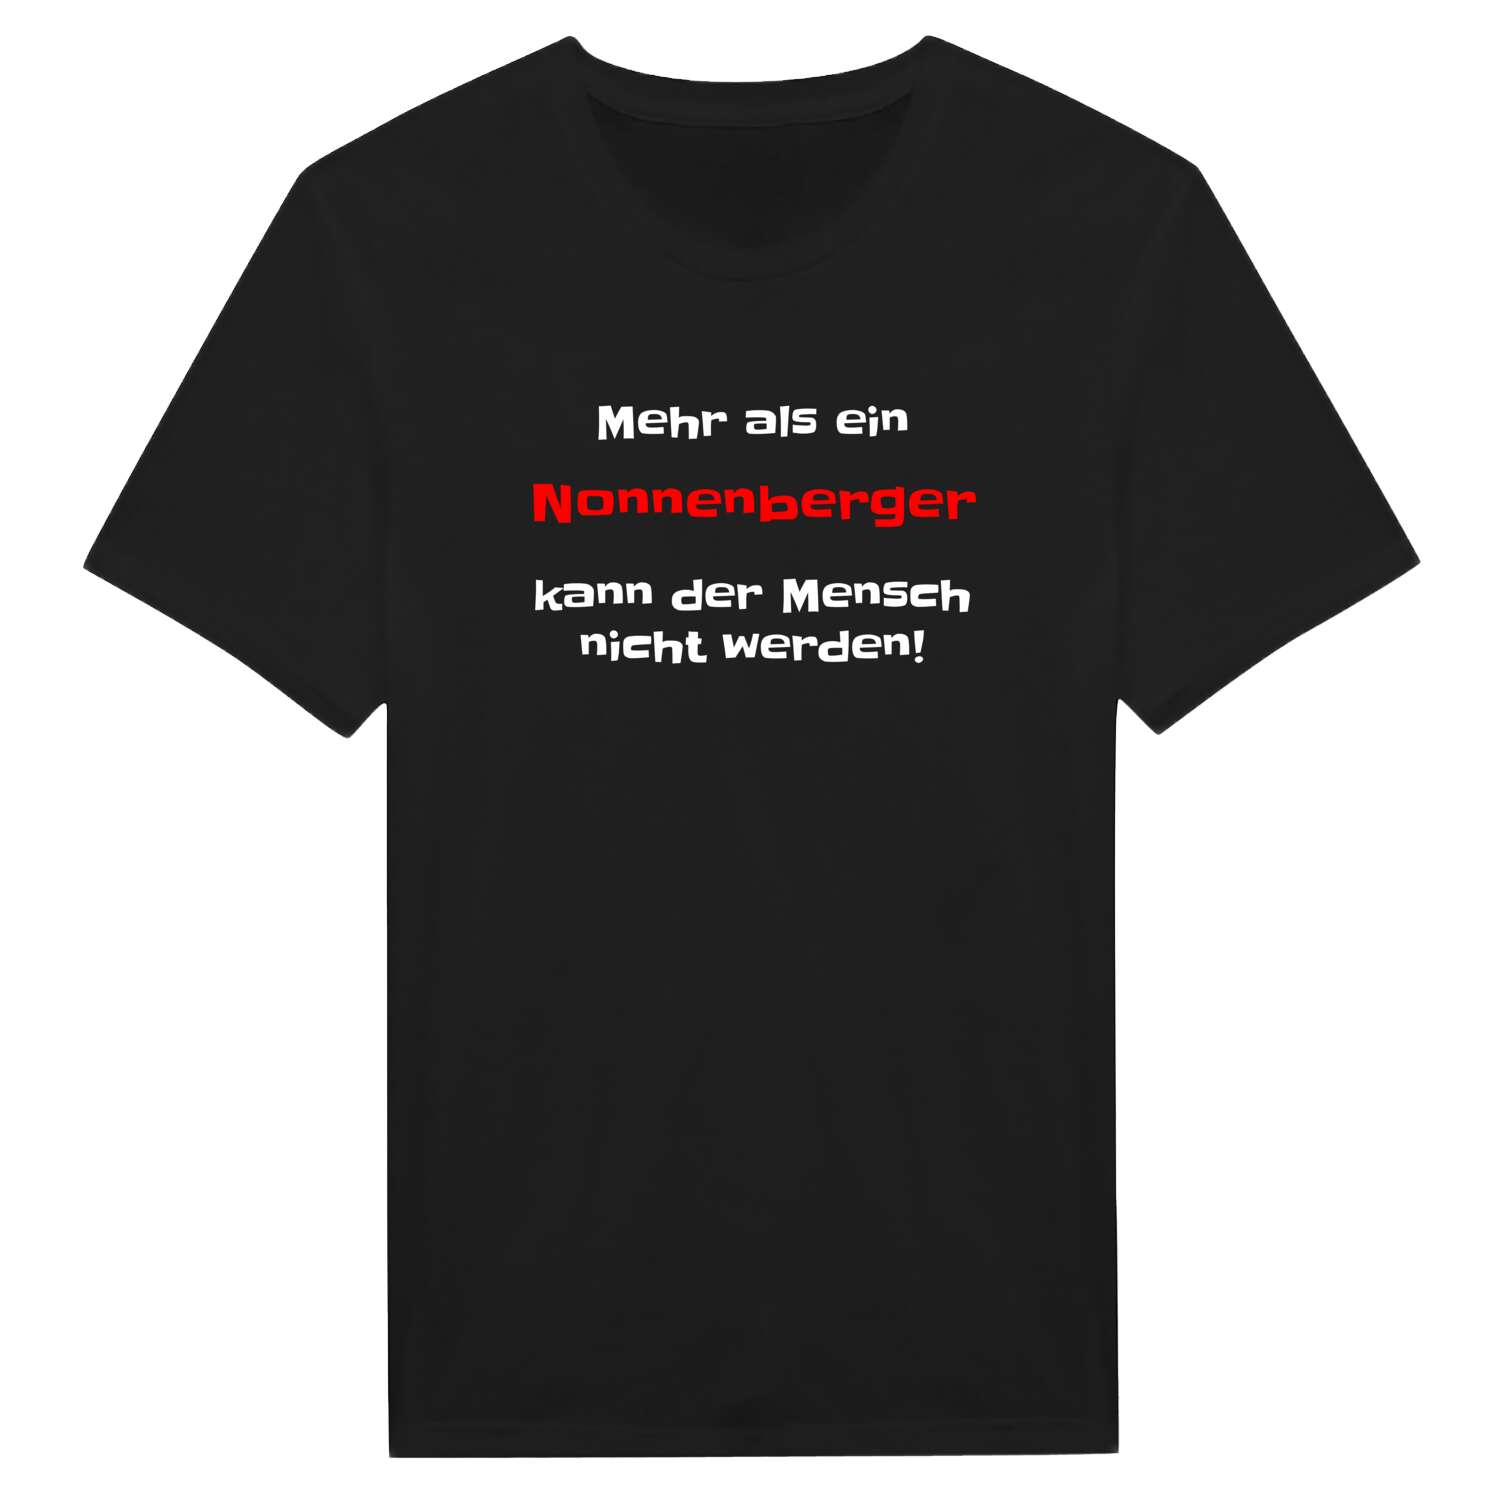 Nonnenberg T-Shirt »Mehr als ein«